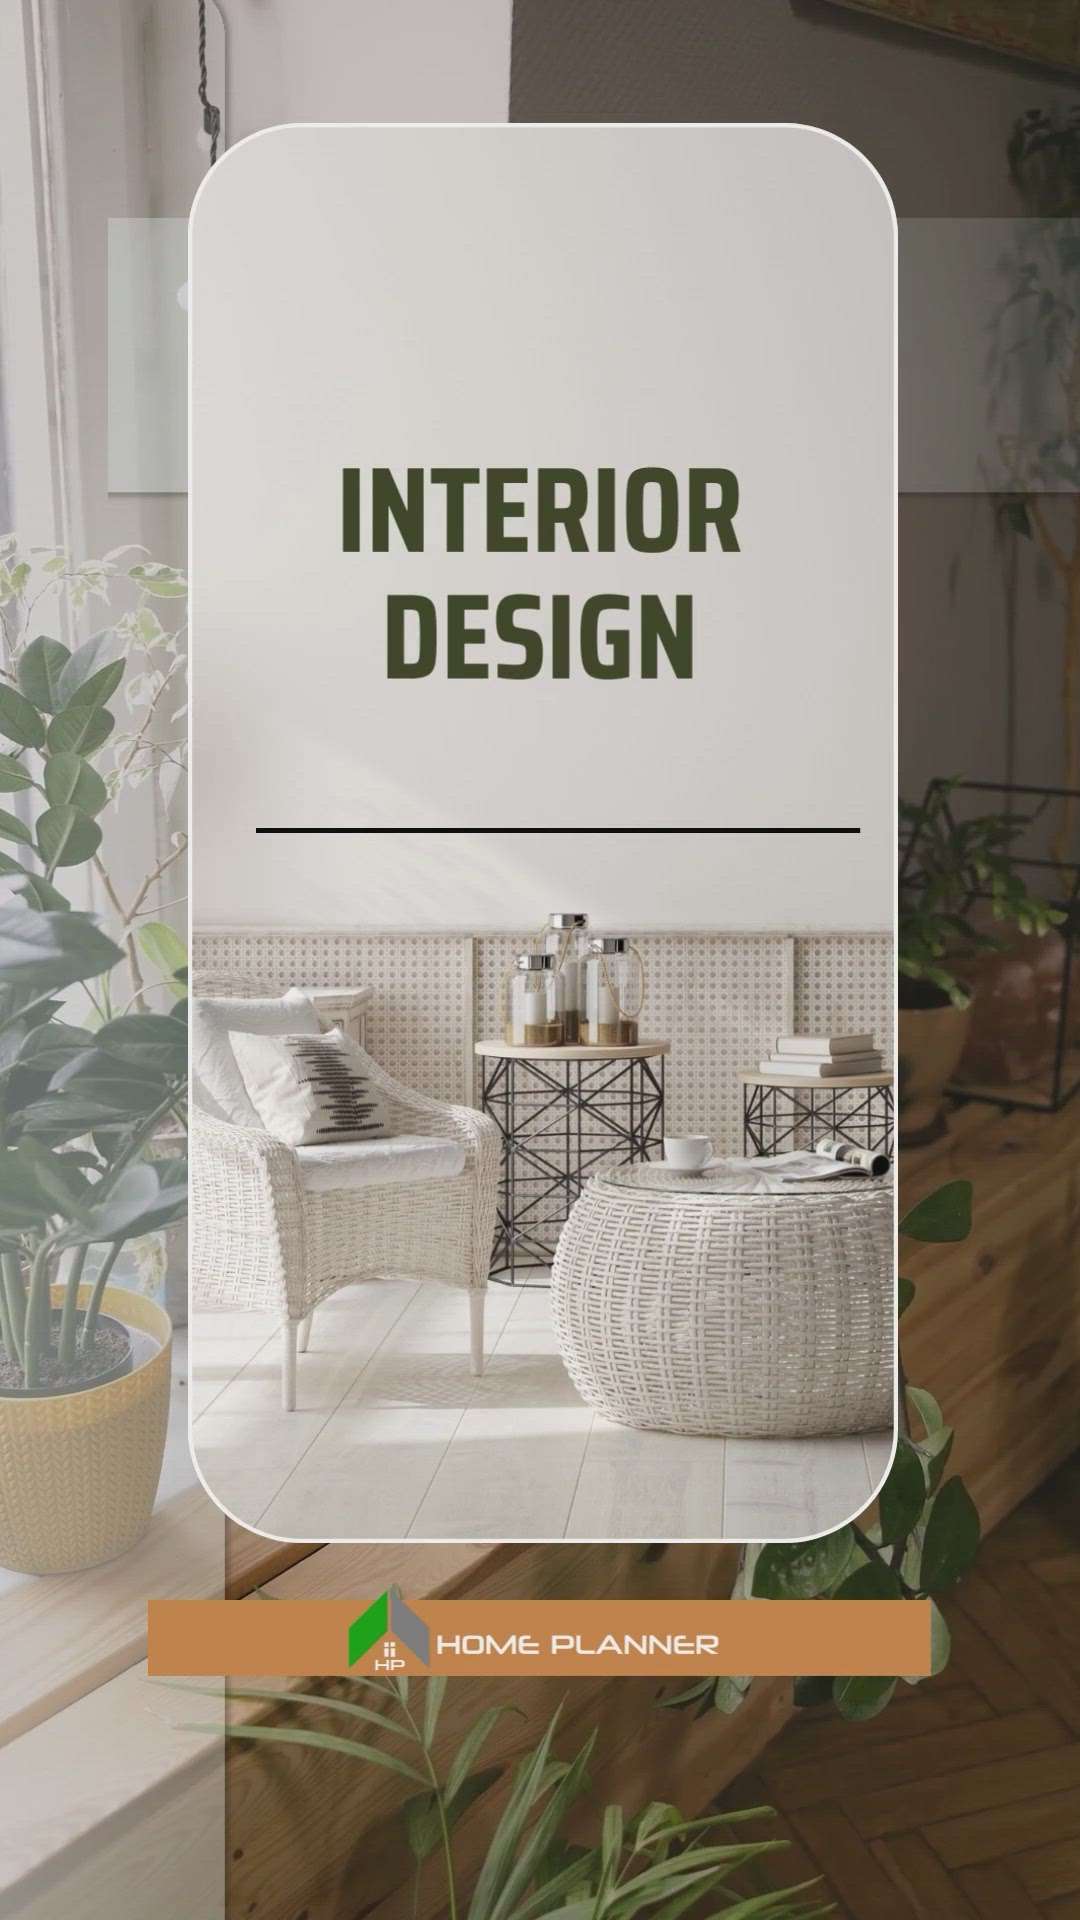 Interior design
#homeplanner #InteriorDesigner